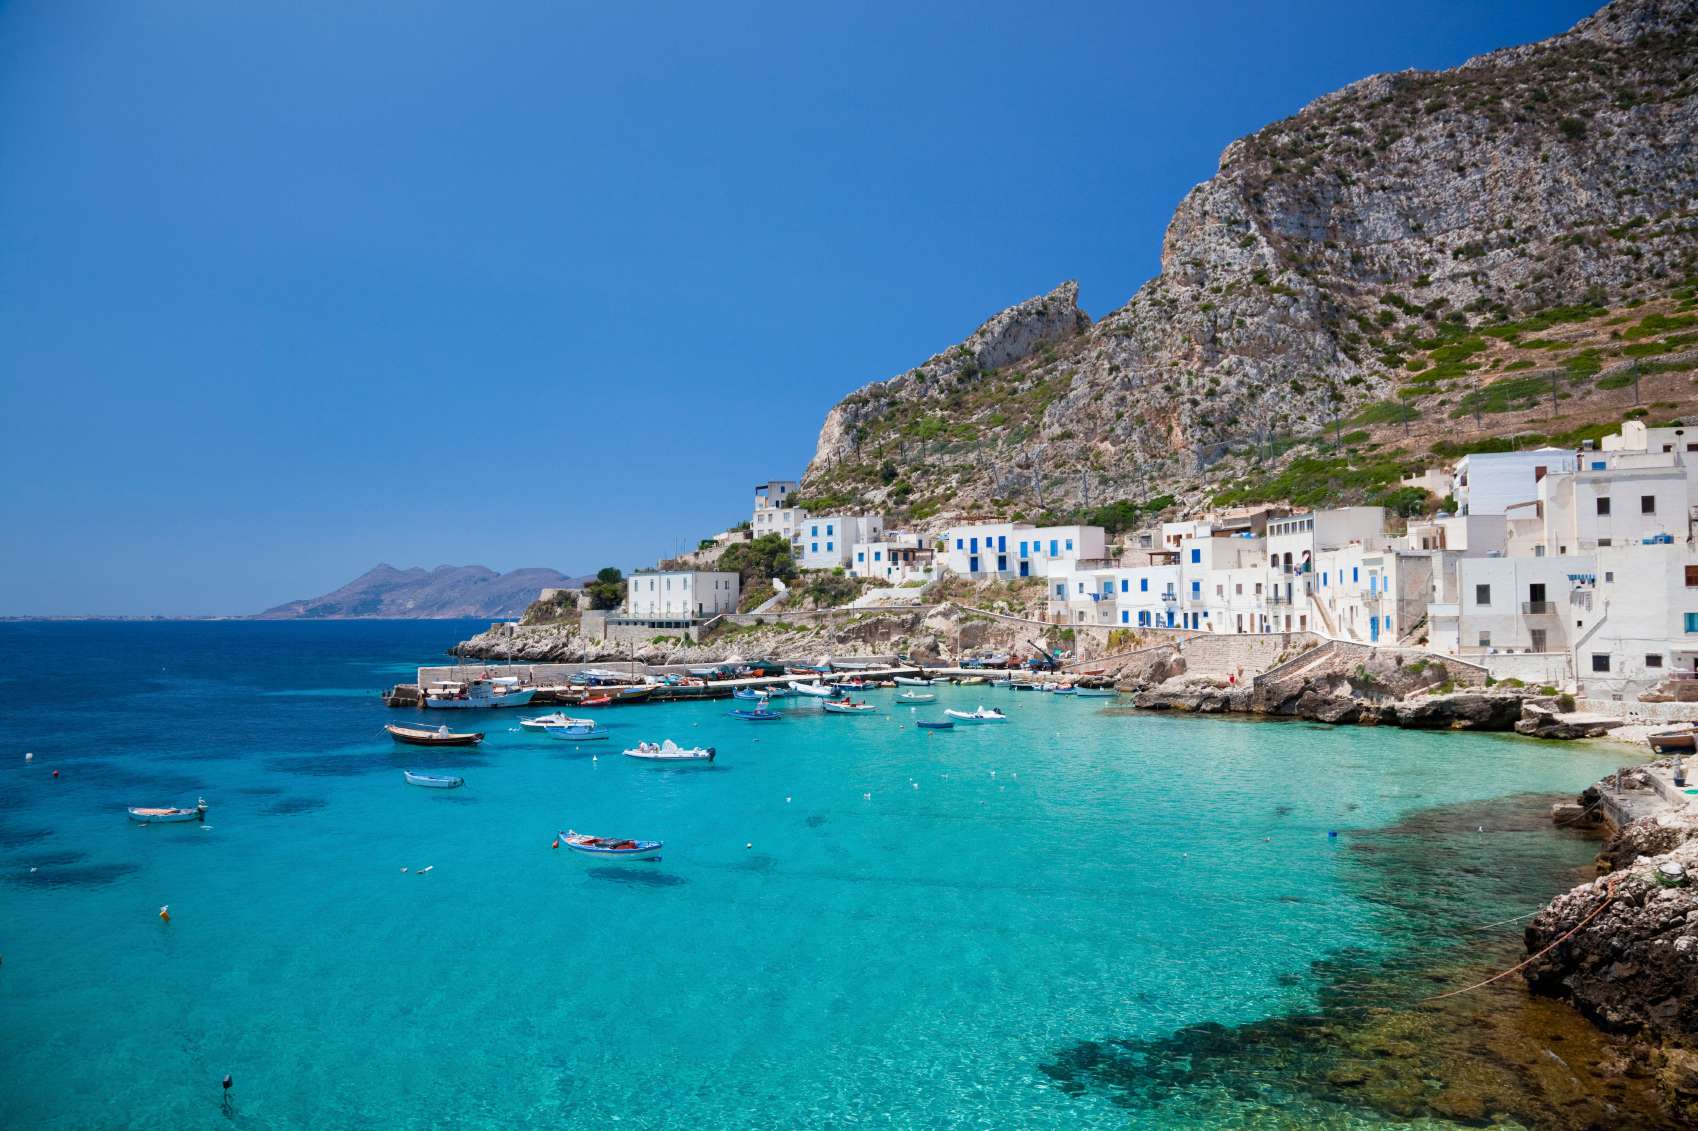 Сардиния, италия — города и районы, экскурсии, достопримечательности сардинии от «тонкостей туризма»